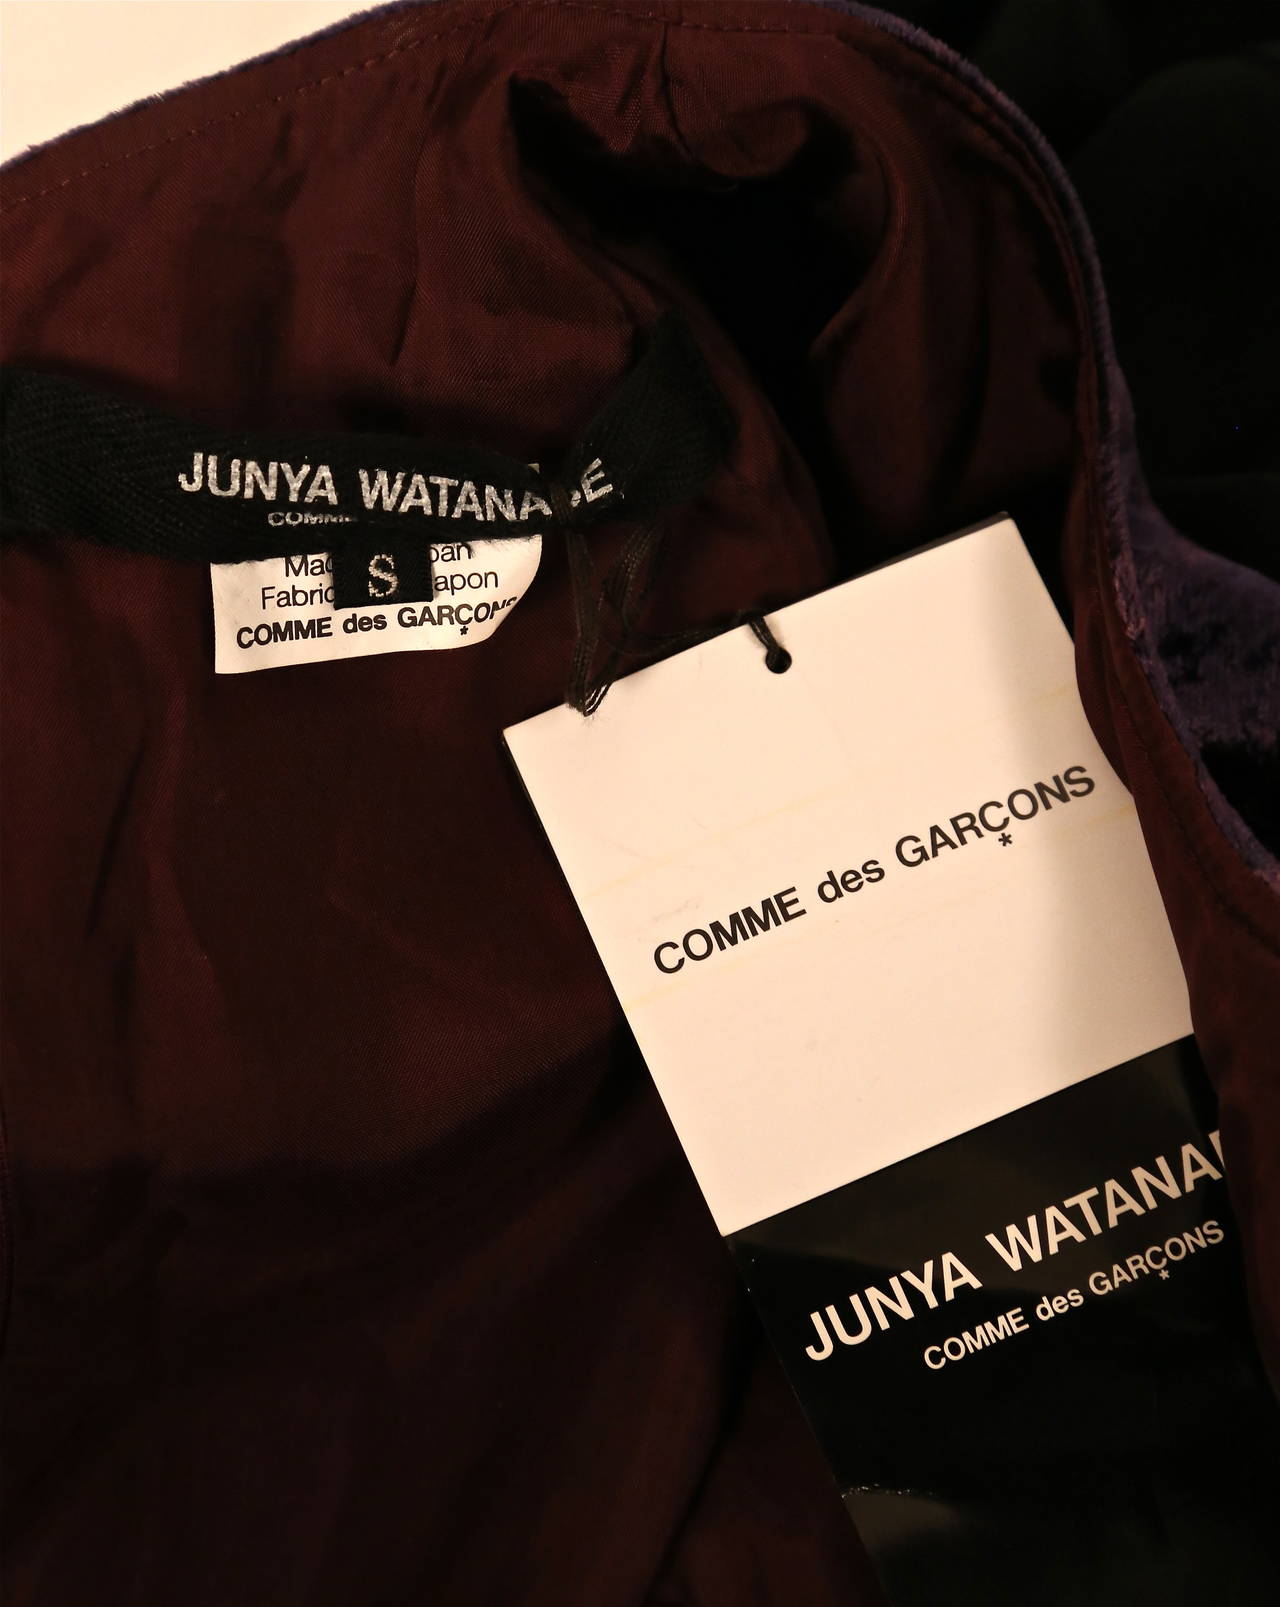 JUNYA WATANABE tie dyed velvet dress with sheer black overlay - unworn with tags 1